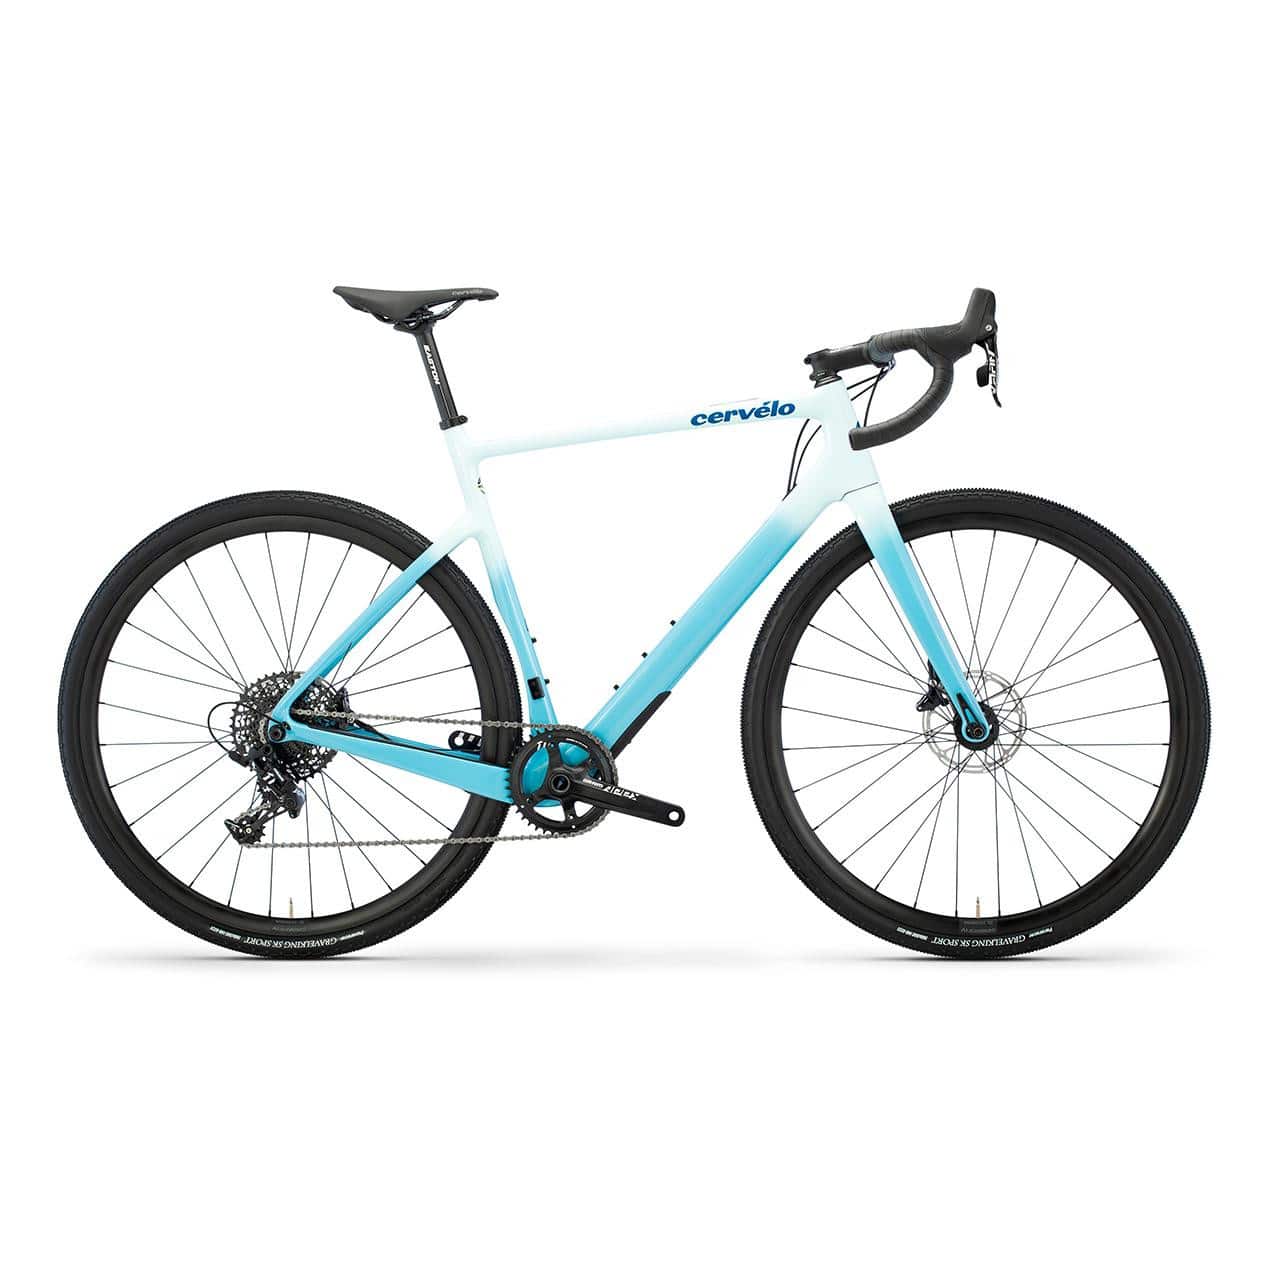 Quadro Bicicletta da corsa cervelo aspero/carbonio Teal Turchese 2020 48cm/61cm NUOVO 